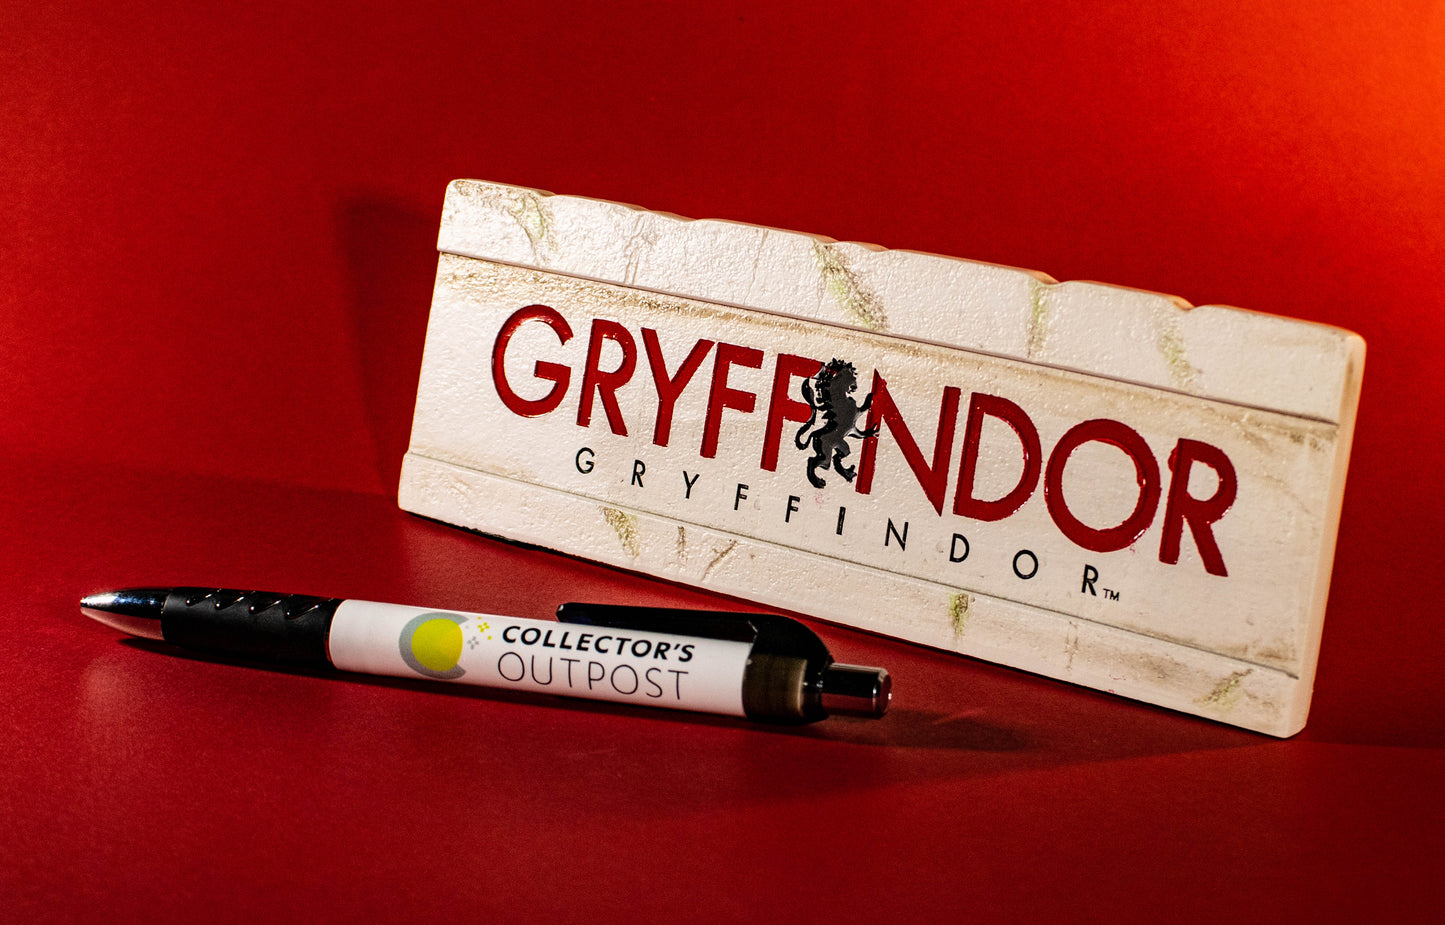 Gryffindor Harry Potter Desk Sign